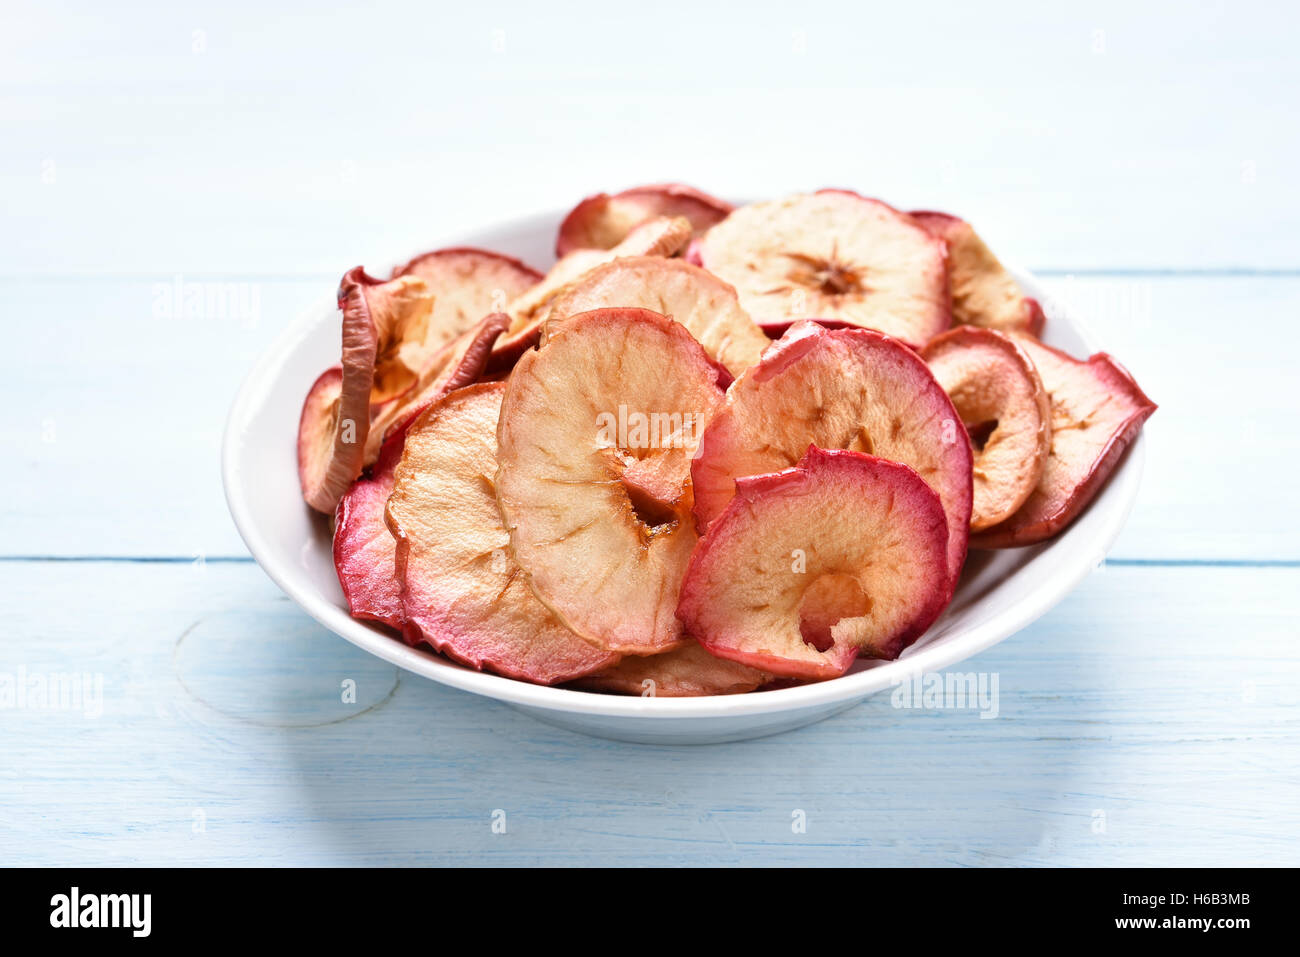 Les pommes chips dans un bol de fruits, casse-croûte santé Banque D'Images